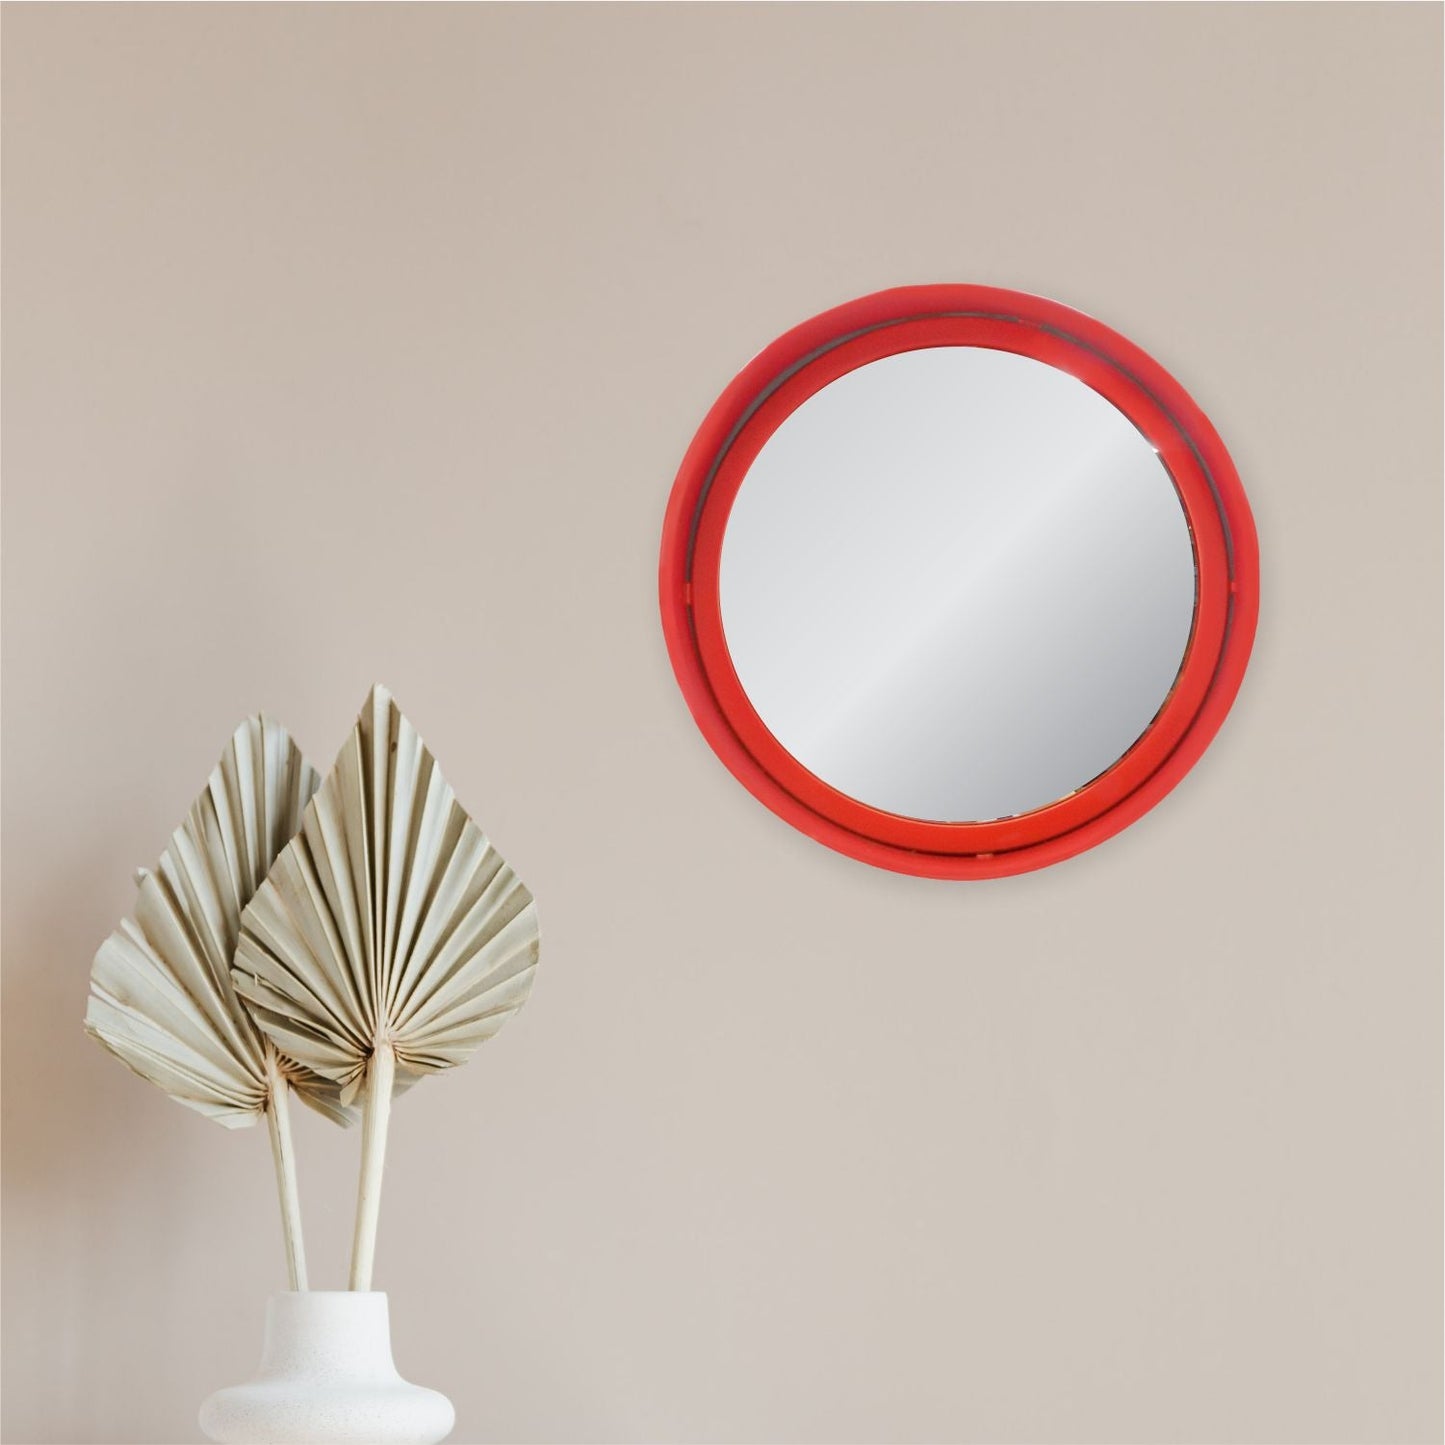 VON CASA Round Mirror, Metal Frame, Elegant Style, Modern Design, Red Colour, Mild Steel